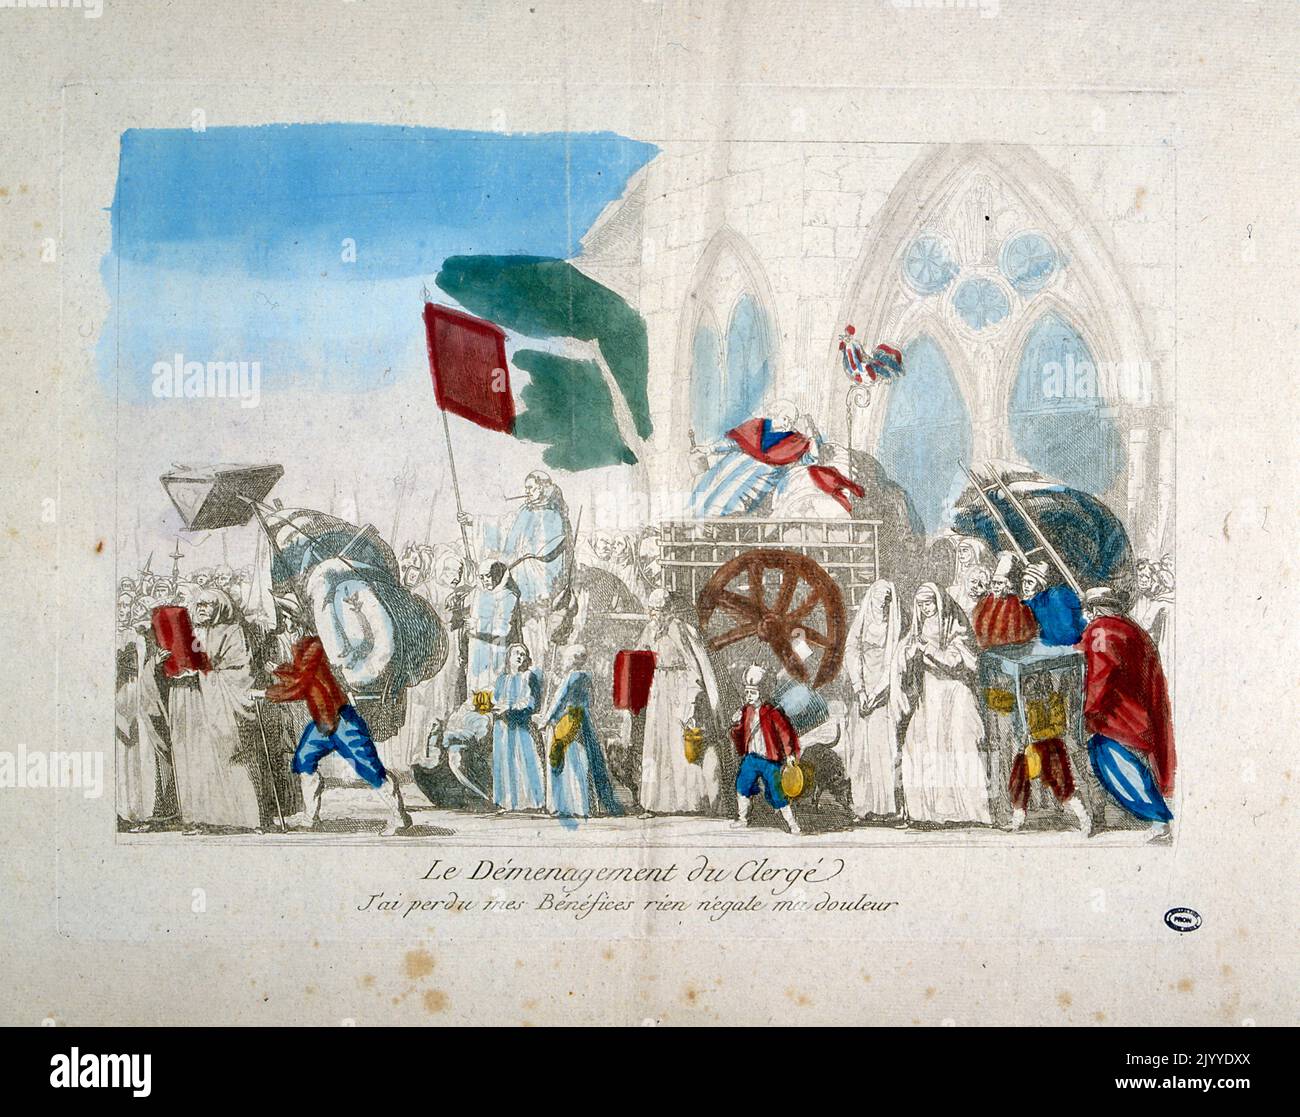 Illustrazione colorata raffigurante l'evacuazione del clero all'inizio della Rivoluzione francese. Foto Stock